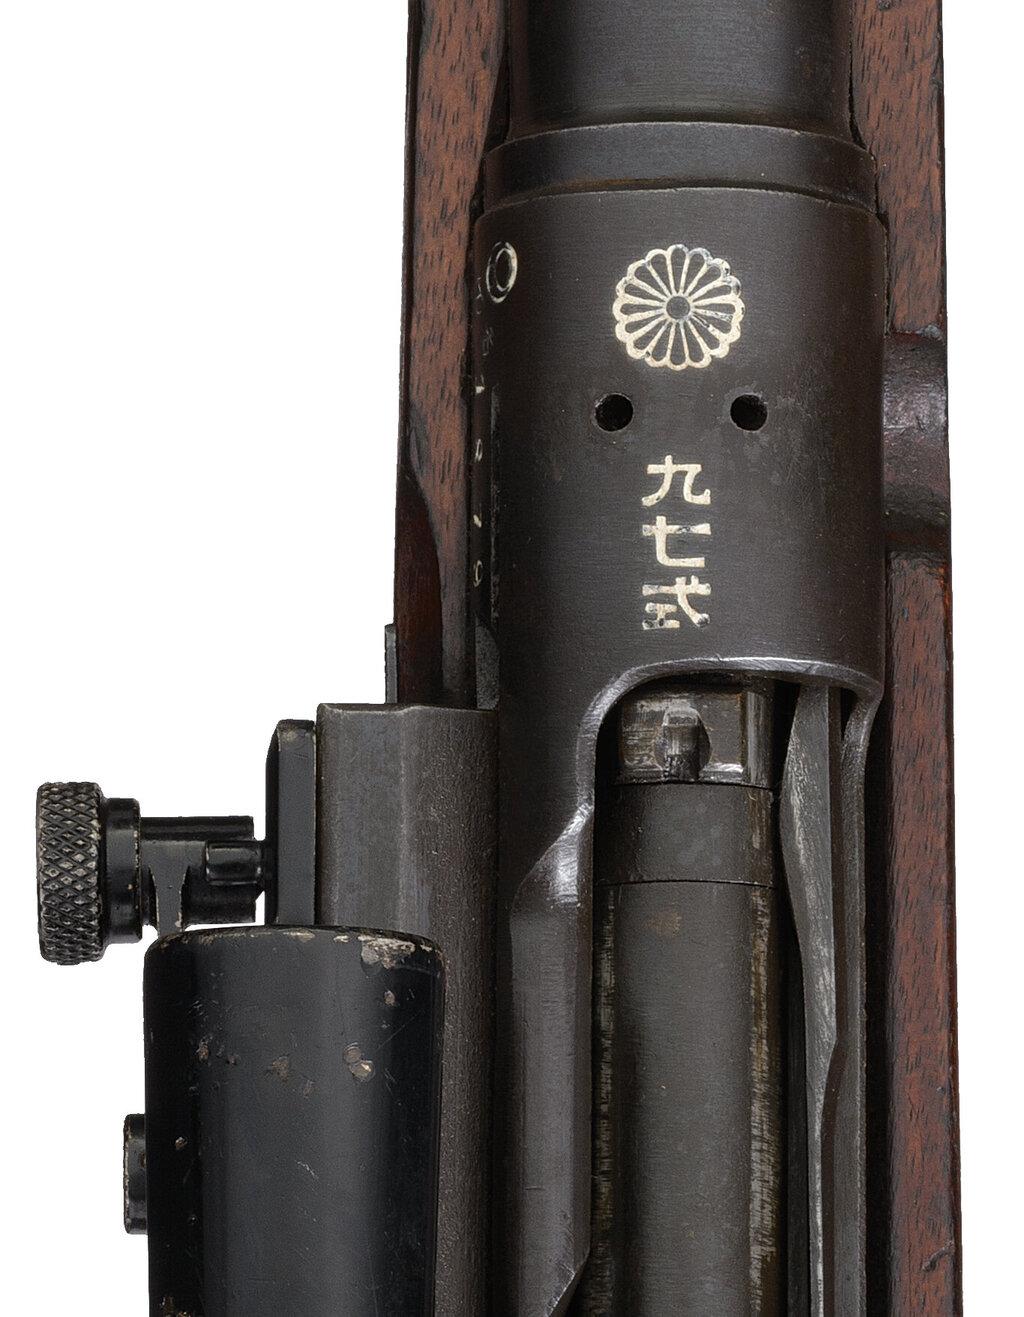 Japanese Nagoya Arsenal Type 97 Sniper Rifle with Scope